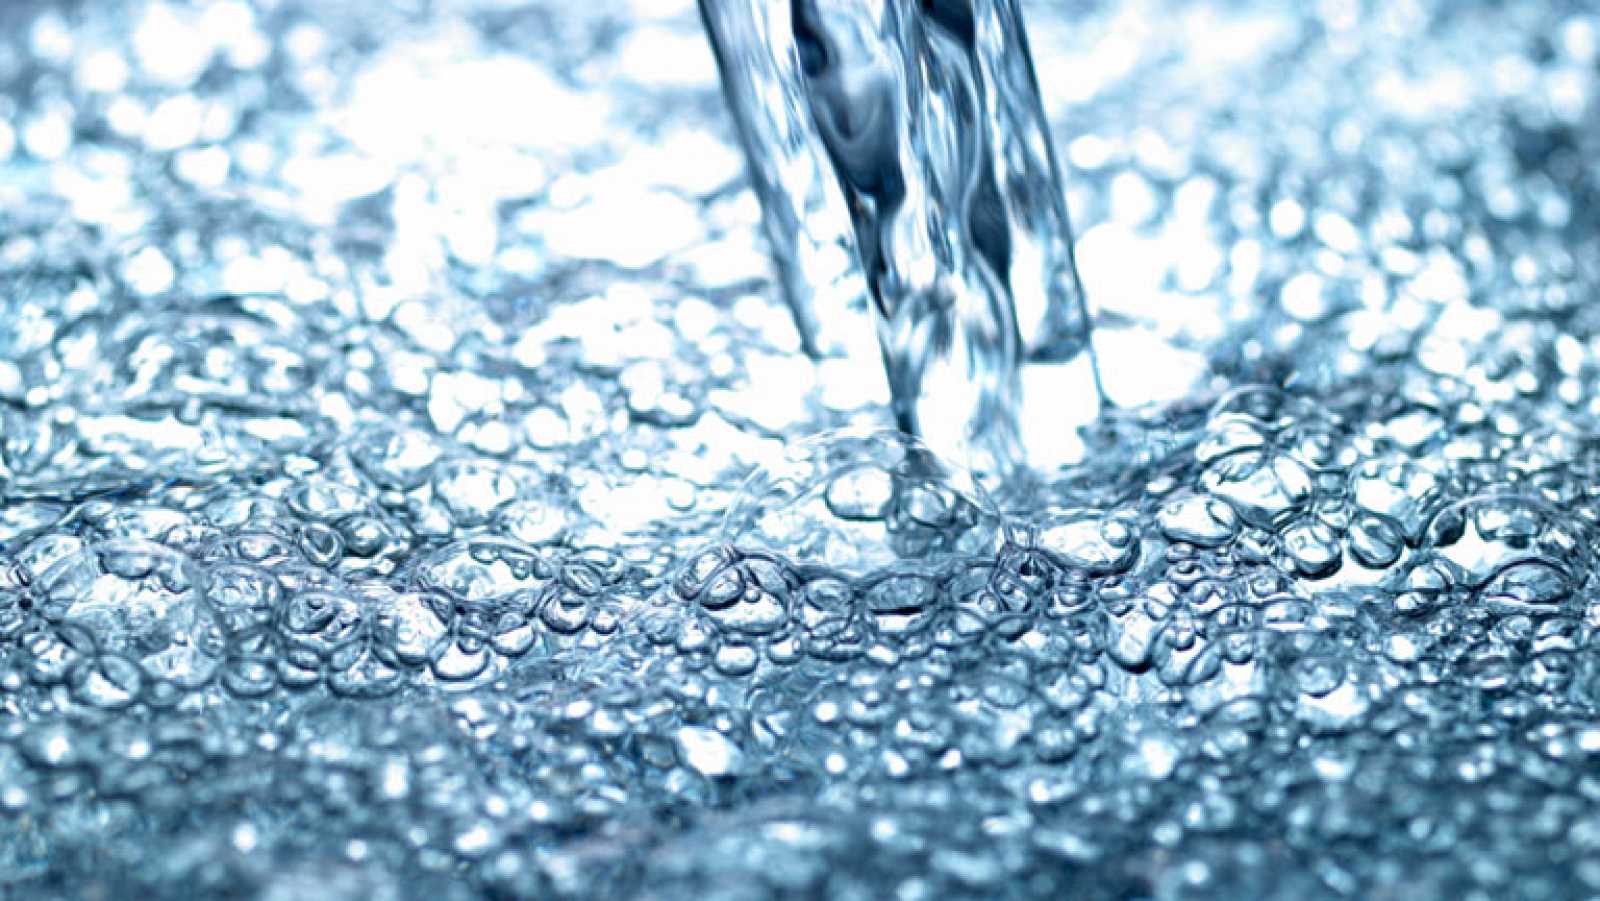 El suministro de agua potable ha sido privatizado en Japón